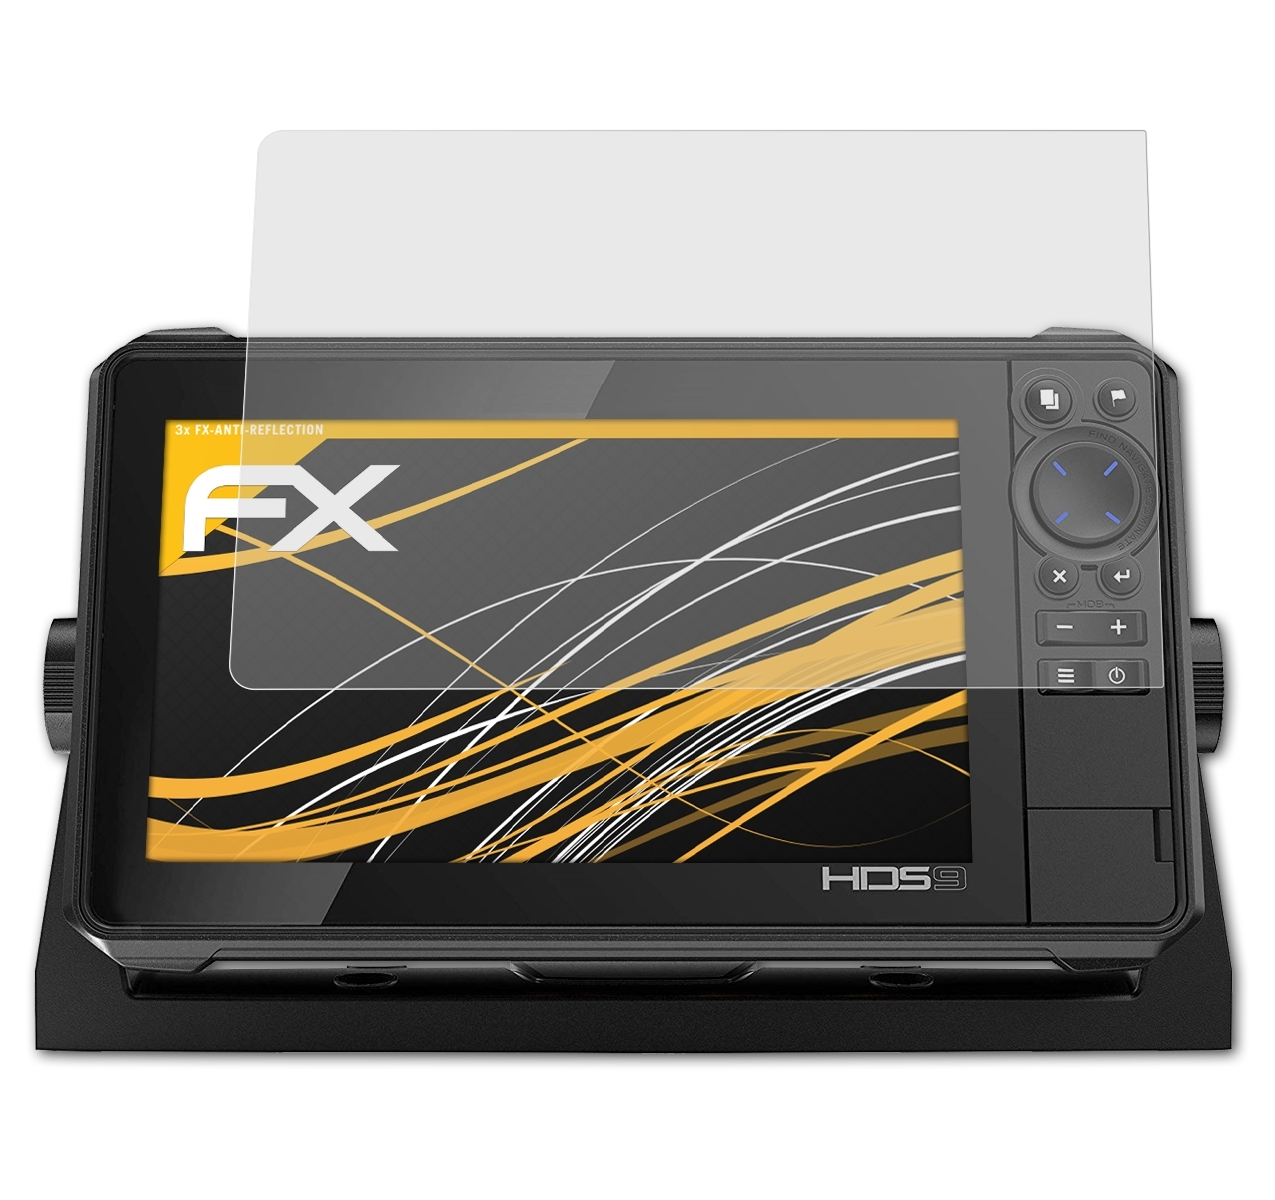 FX-Antireflex Lowrance Live 3x 9) HDS Displayschutz(für ATFOLIX